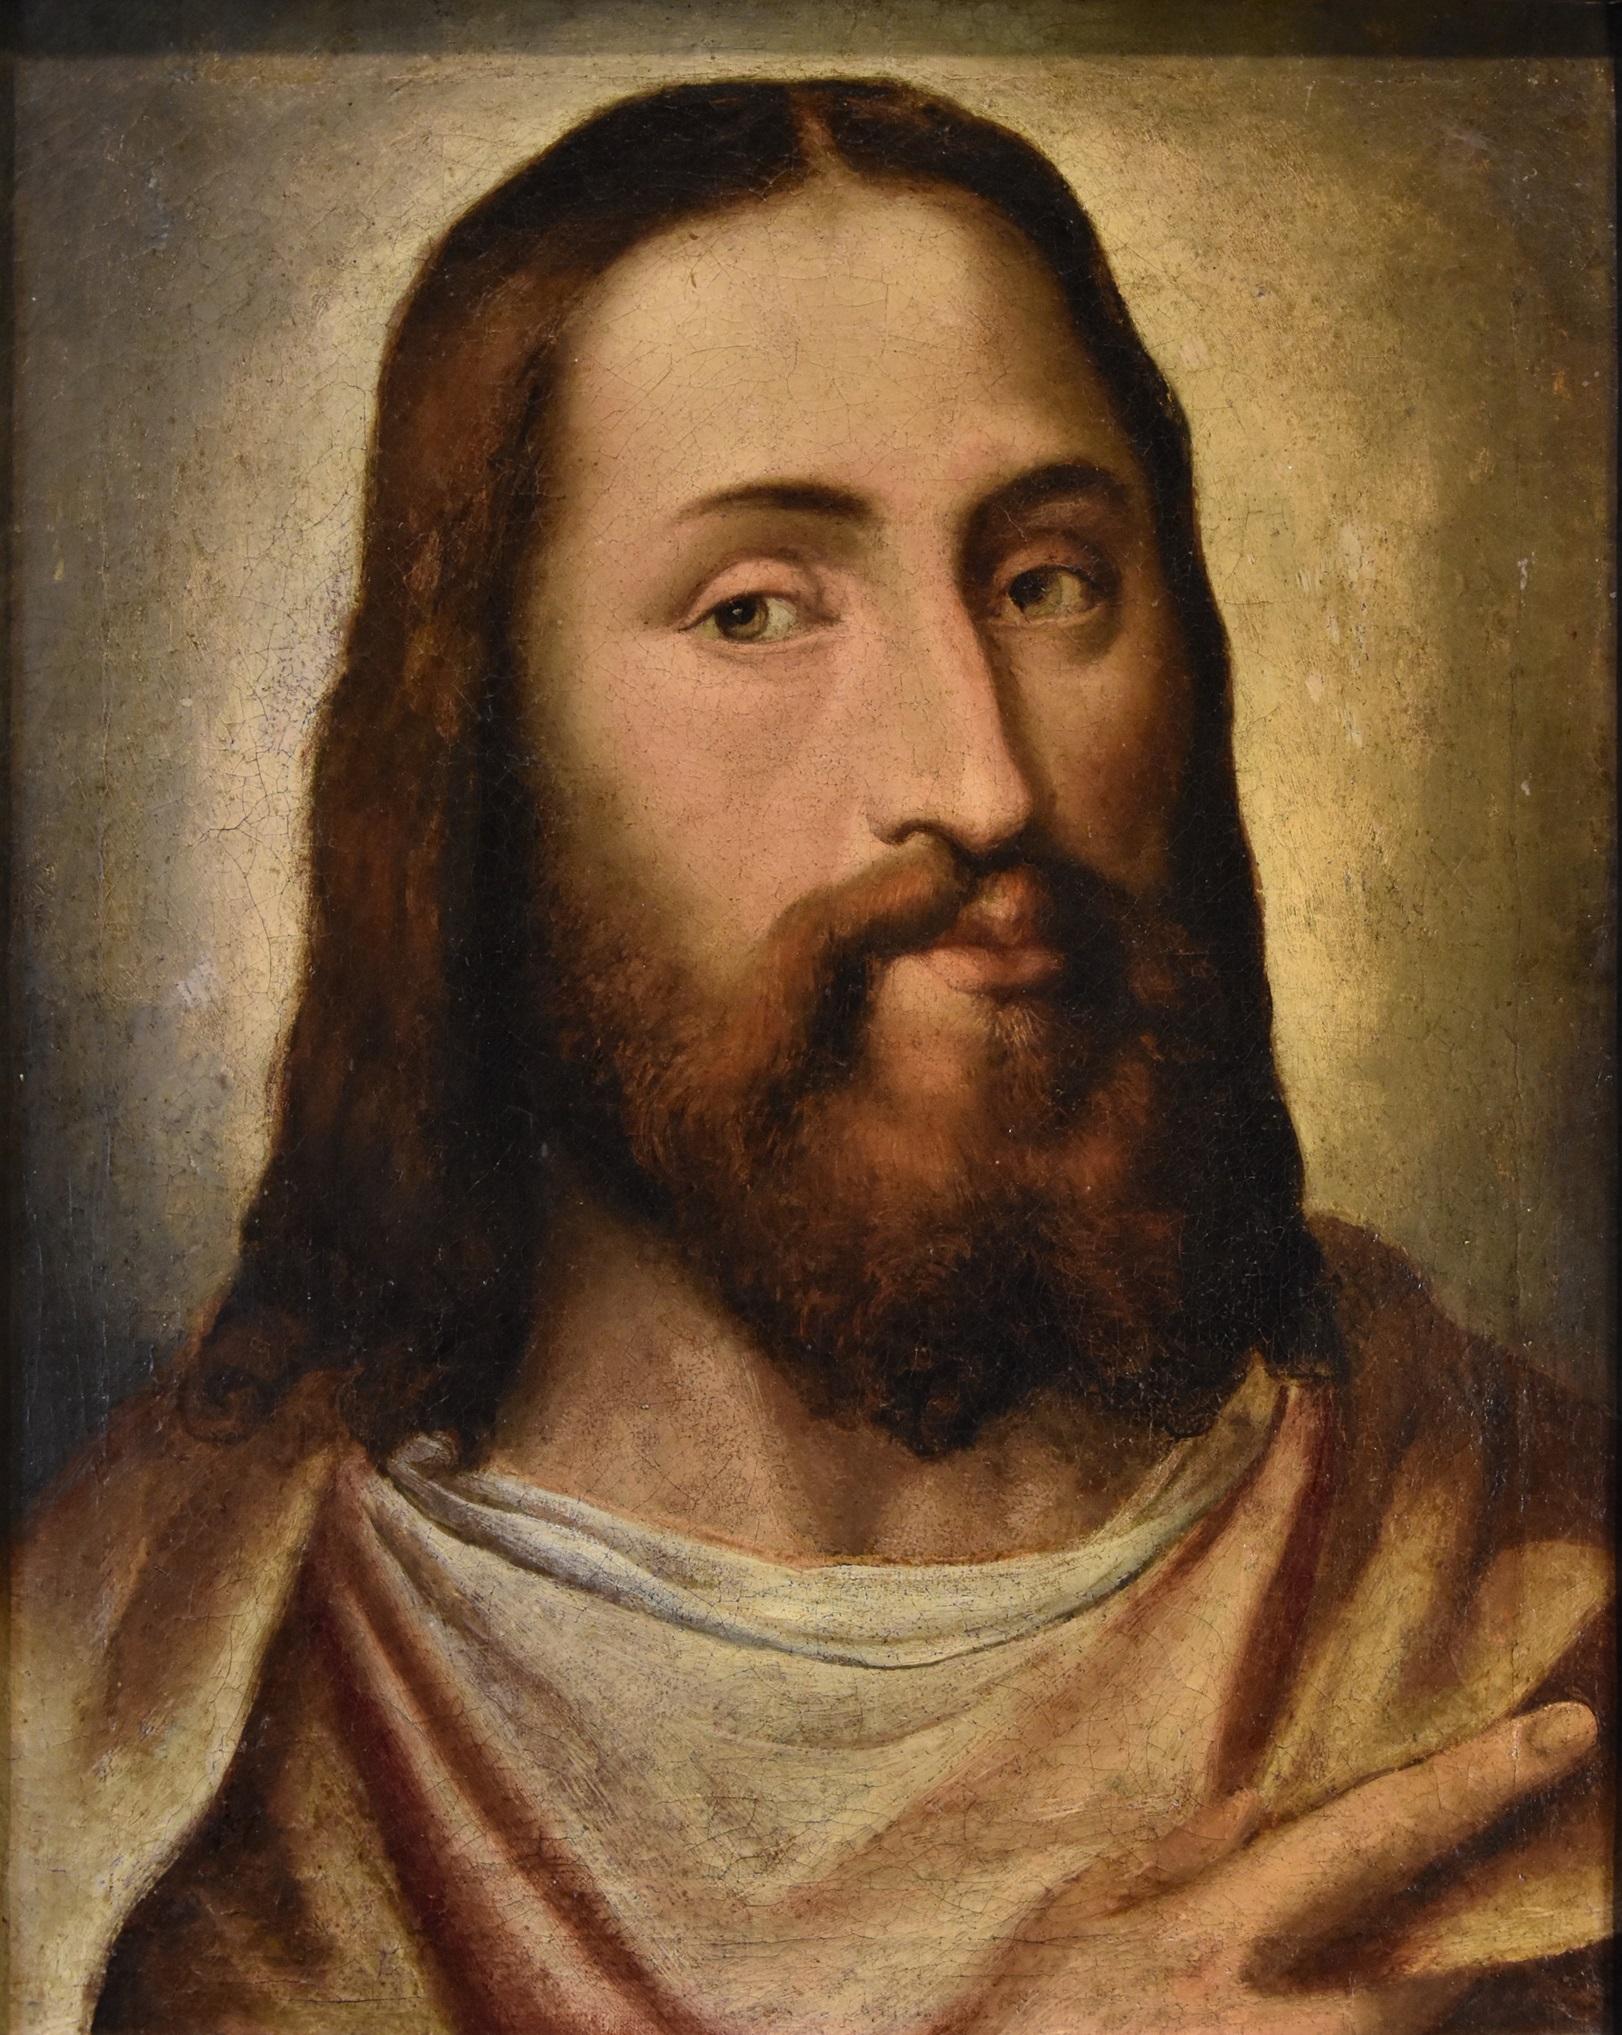 Portrait du Christ Titien 16ème siècle Huile sur toile Grand maître Venezia Italie 1